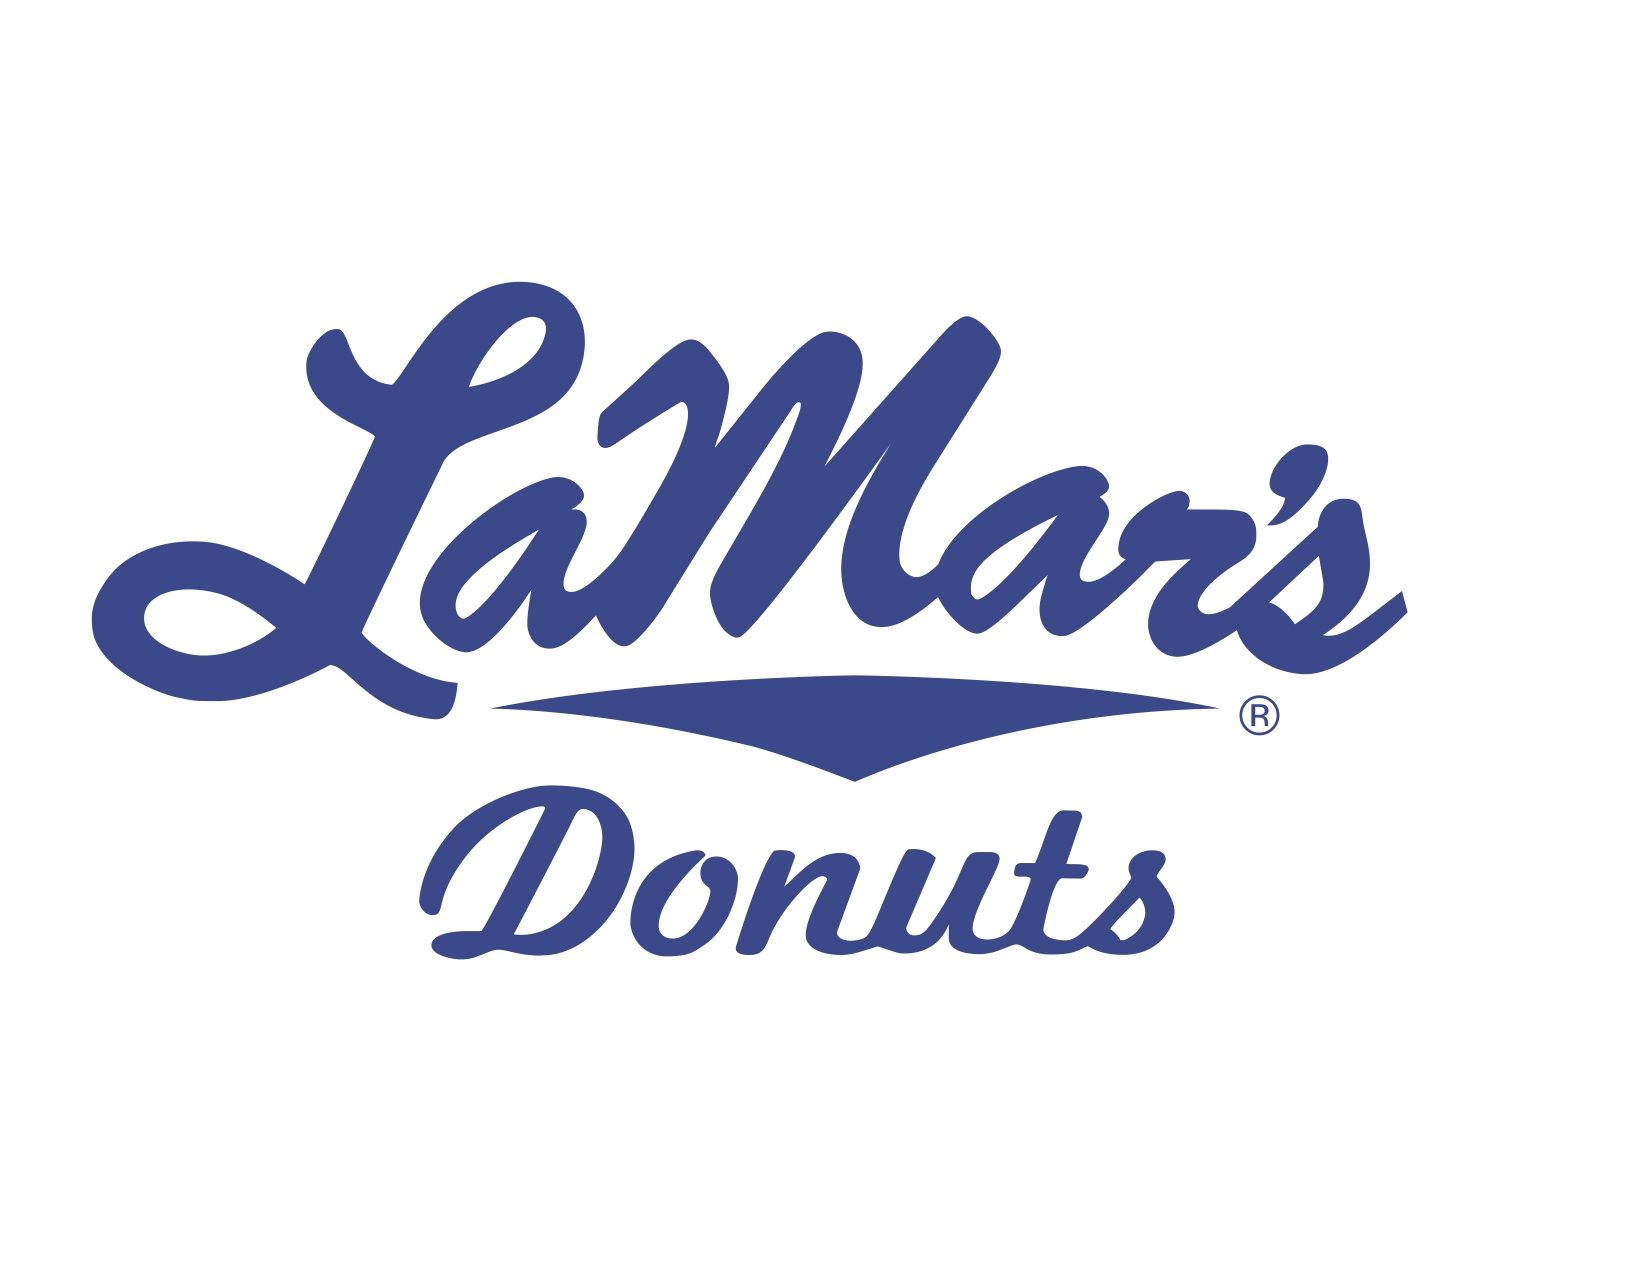 LaMar’s Donuts Honor